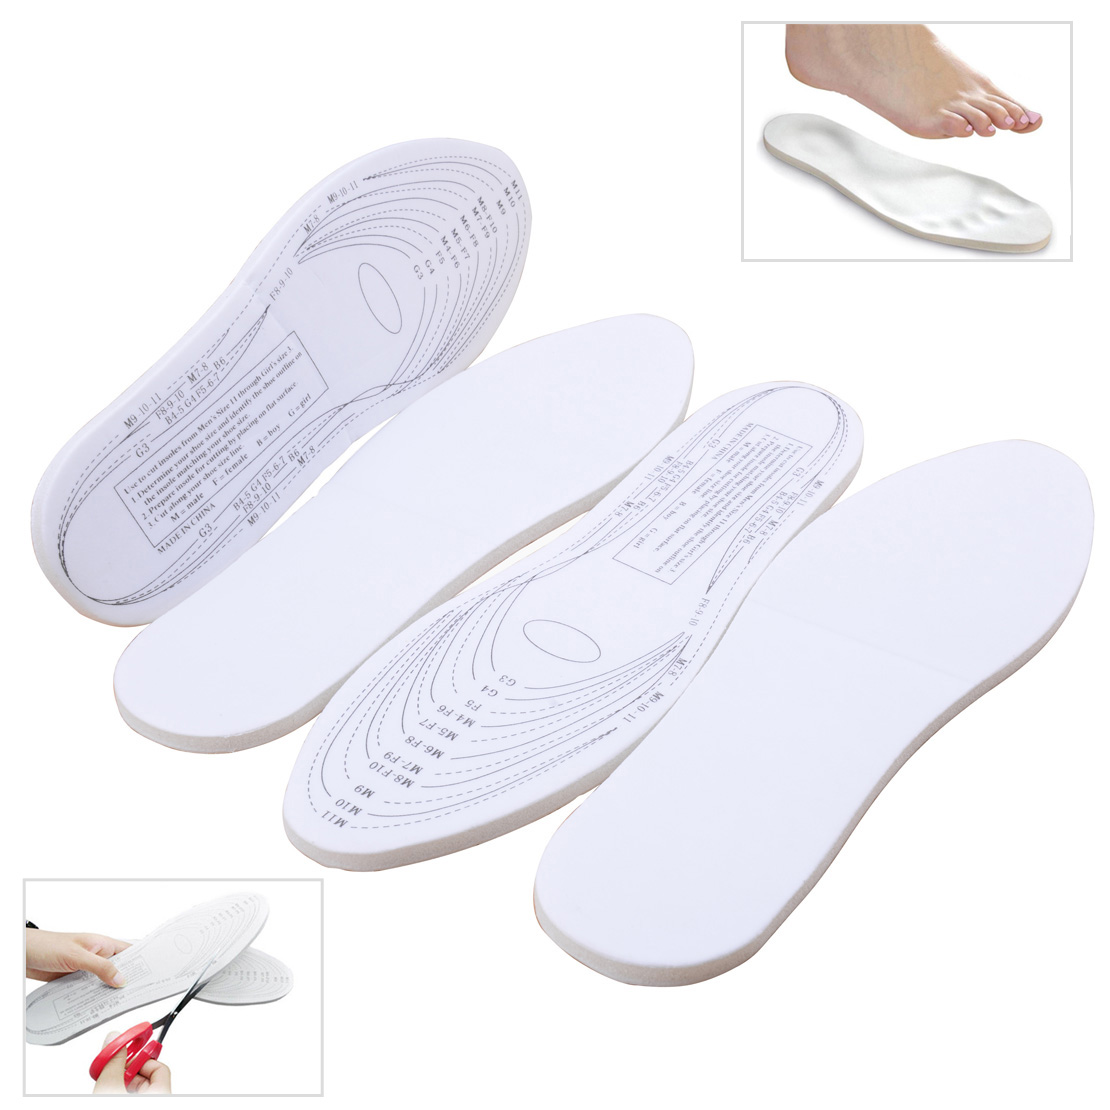 2Pair Unisex Memory Foam Insoles Shoe Trainer Foot Care Pad Comfort ...